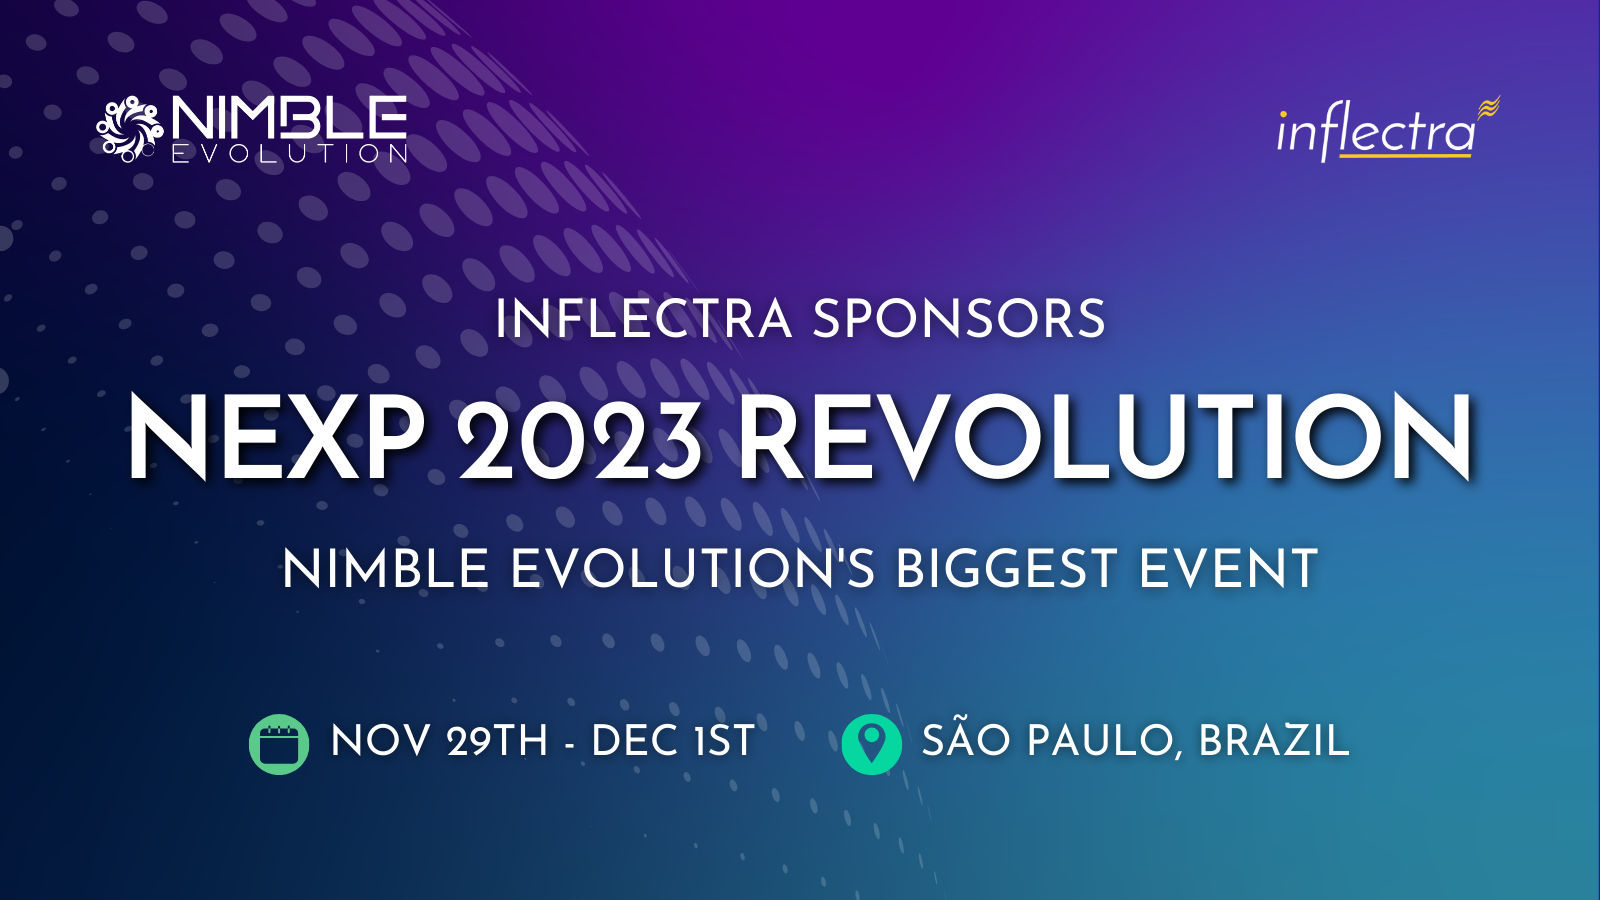 inflectra-sponsors-nexp-2023-revolution-nimble-evolutions-biggest-event-in-november-in-sao-paulo-brazil-image